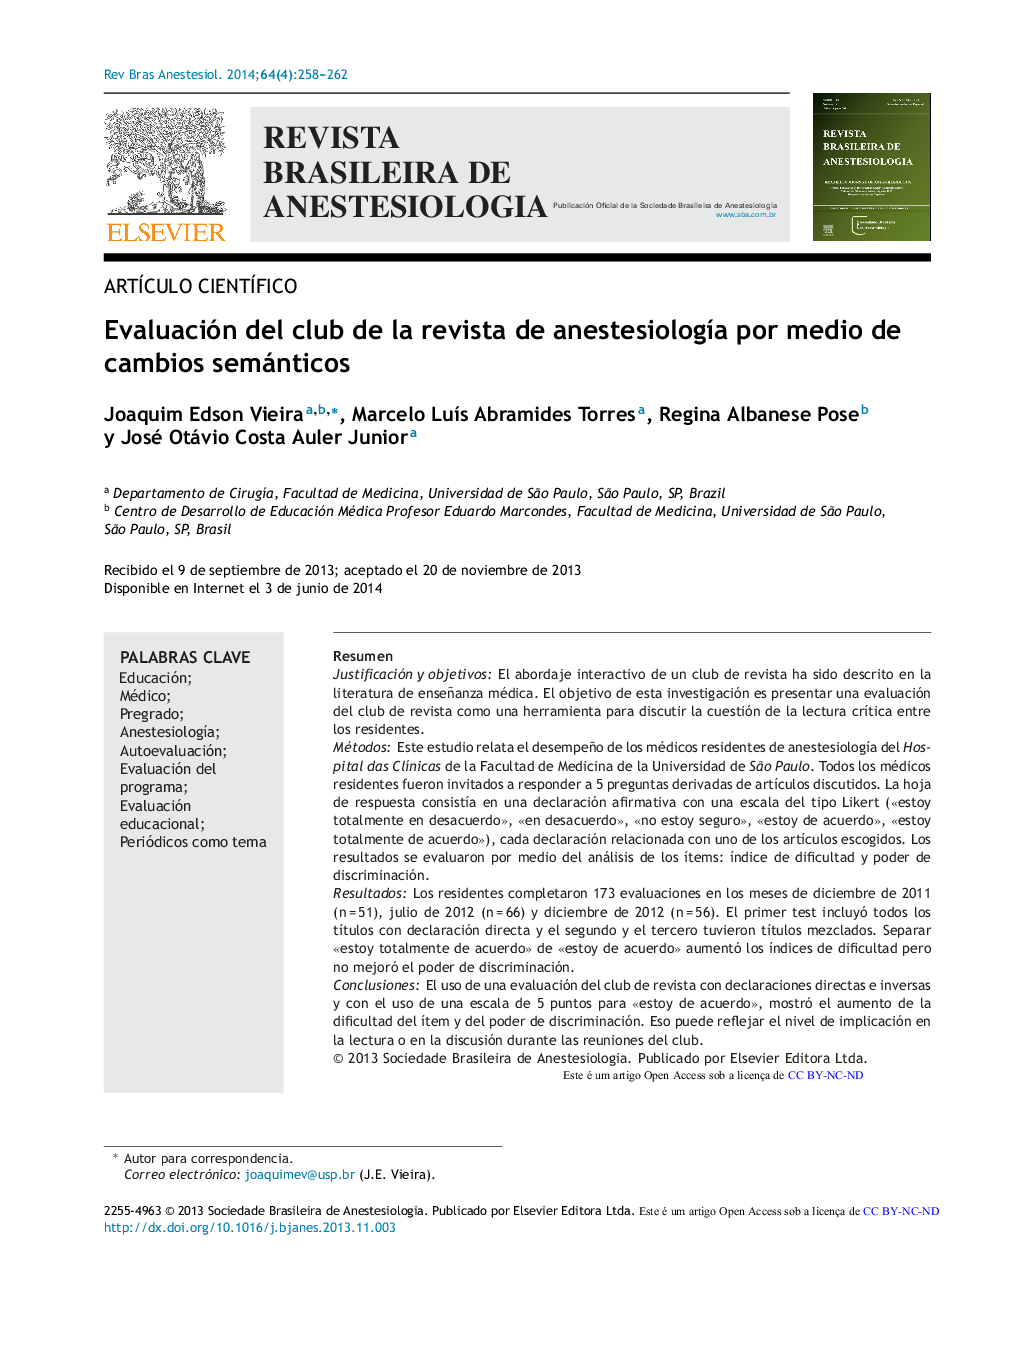 Evaluación del club de la revista de anestesiología por medio de cambios semánticos